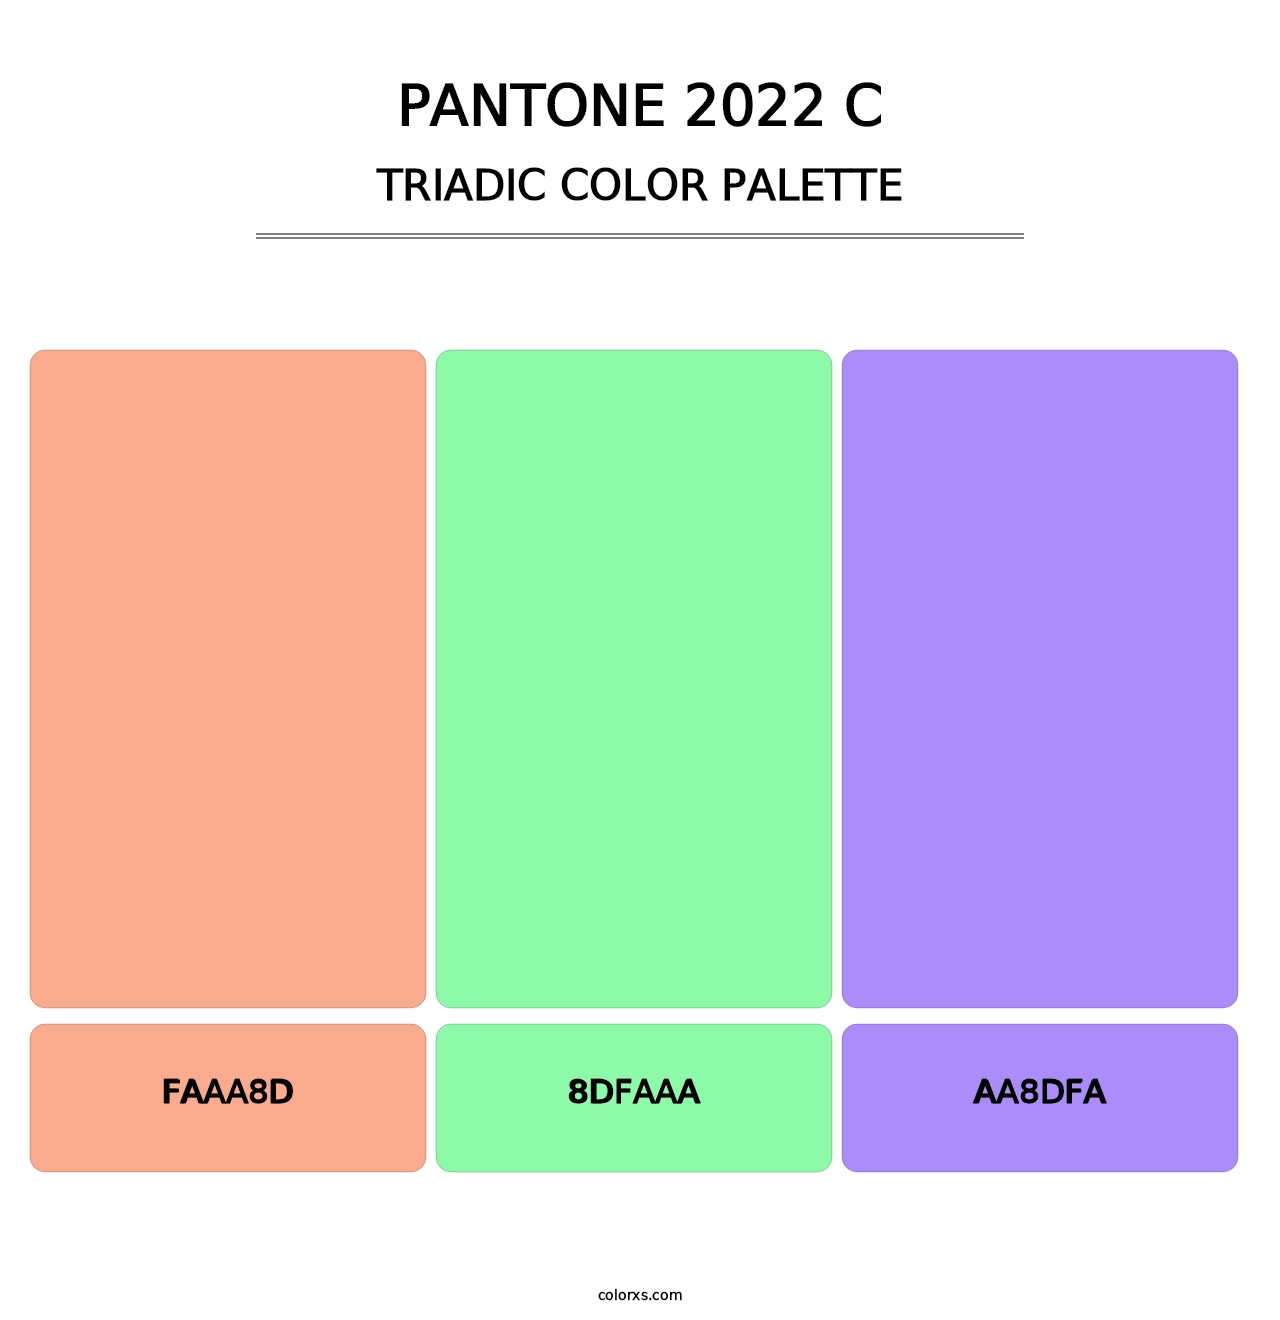 PANTONE 2022 C - Triadic Color Palette